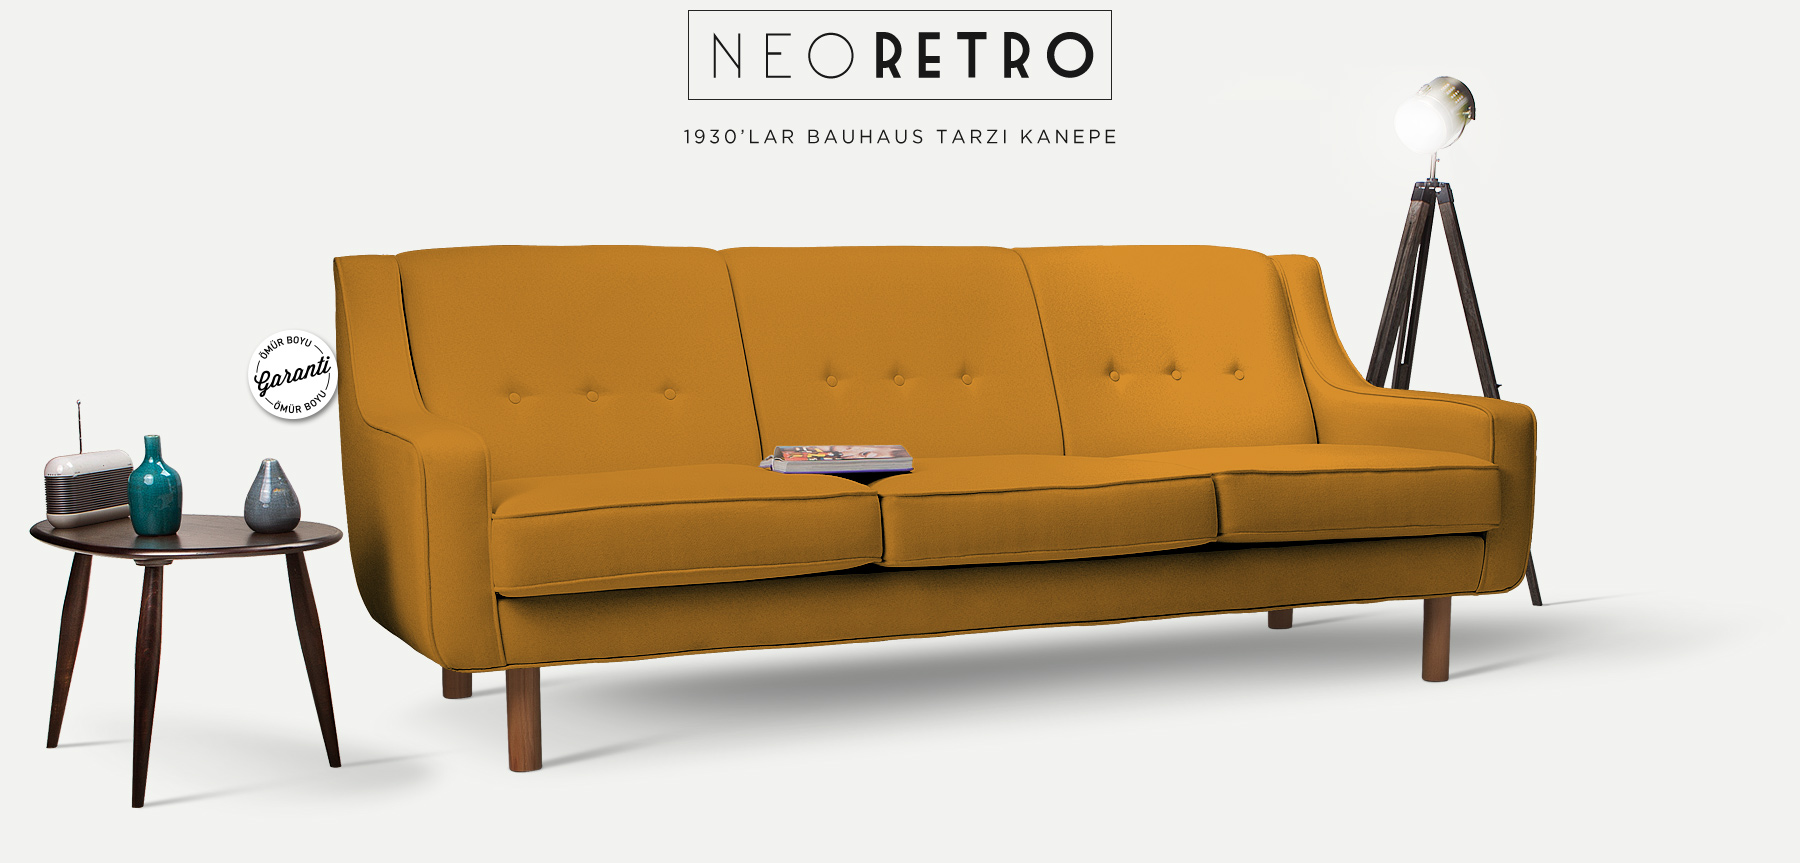 neoretro™ üçlü hardal kanepe'in resmi